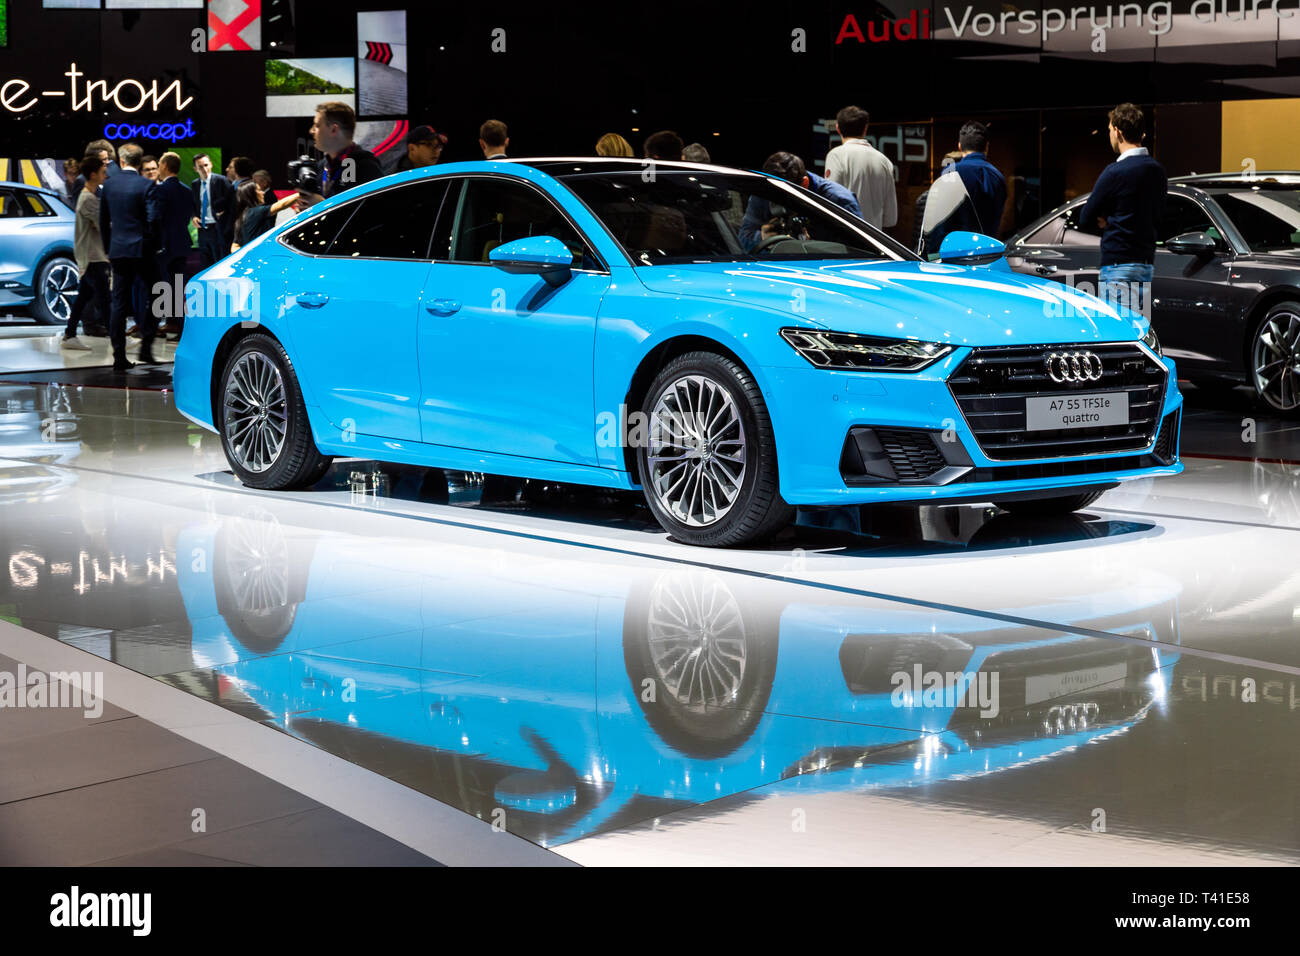 Genf, Schweiz - 5. MÄRZ 2019: Audi A7 Quattro Auto auf dem 89.  Internationalen Automobilsalon in Genf präsentiert Stockfotografie - Alamy